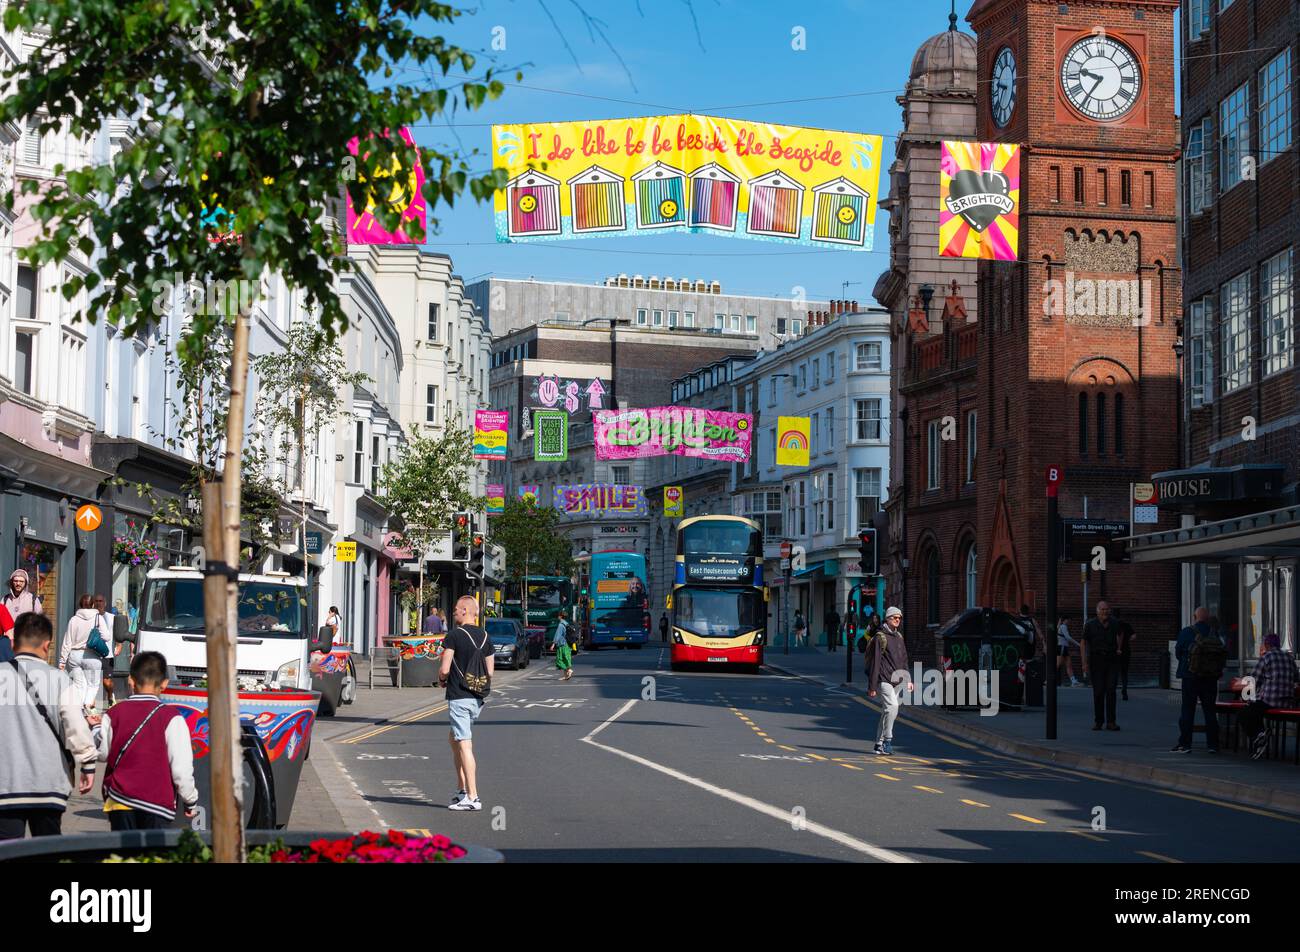 La bannière « J'aime être au bord de la mer » suspendue sur North Street dans le centre-ville de Brighton, en été, dans la ville de Brighton et Hove, au Royaume-Uni. Banque D'Images